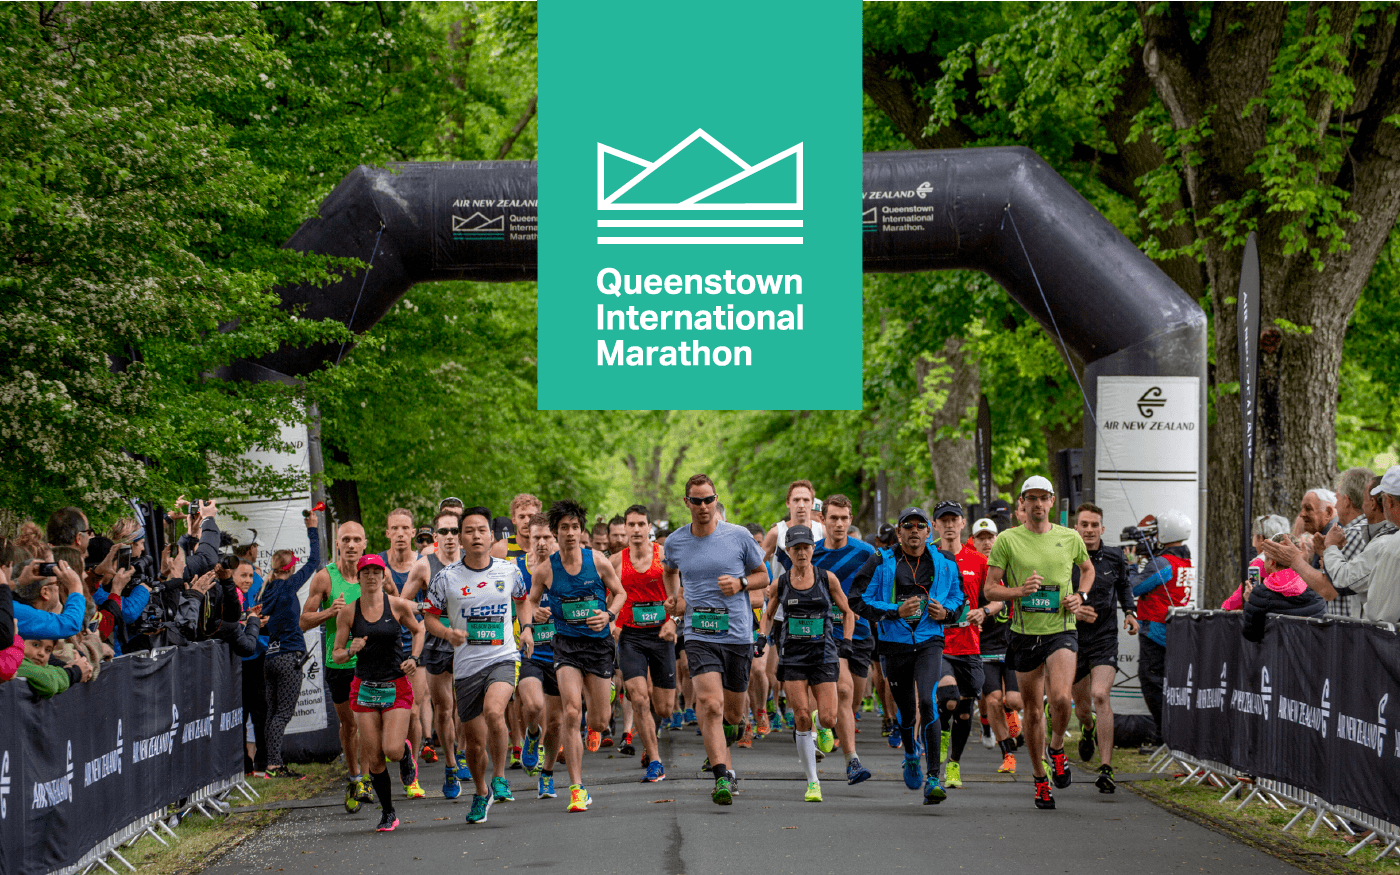 Queenstown Marathon brand mark